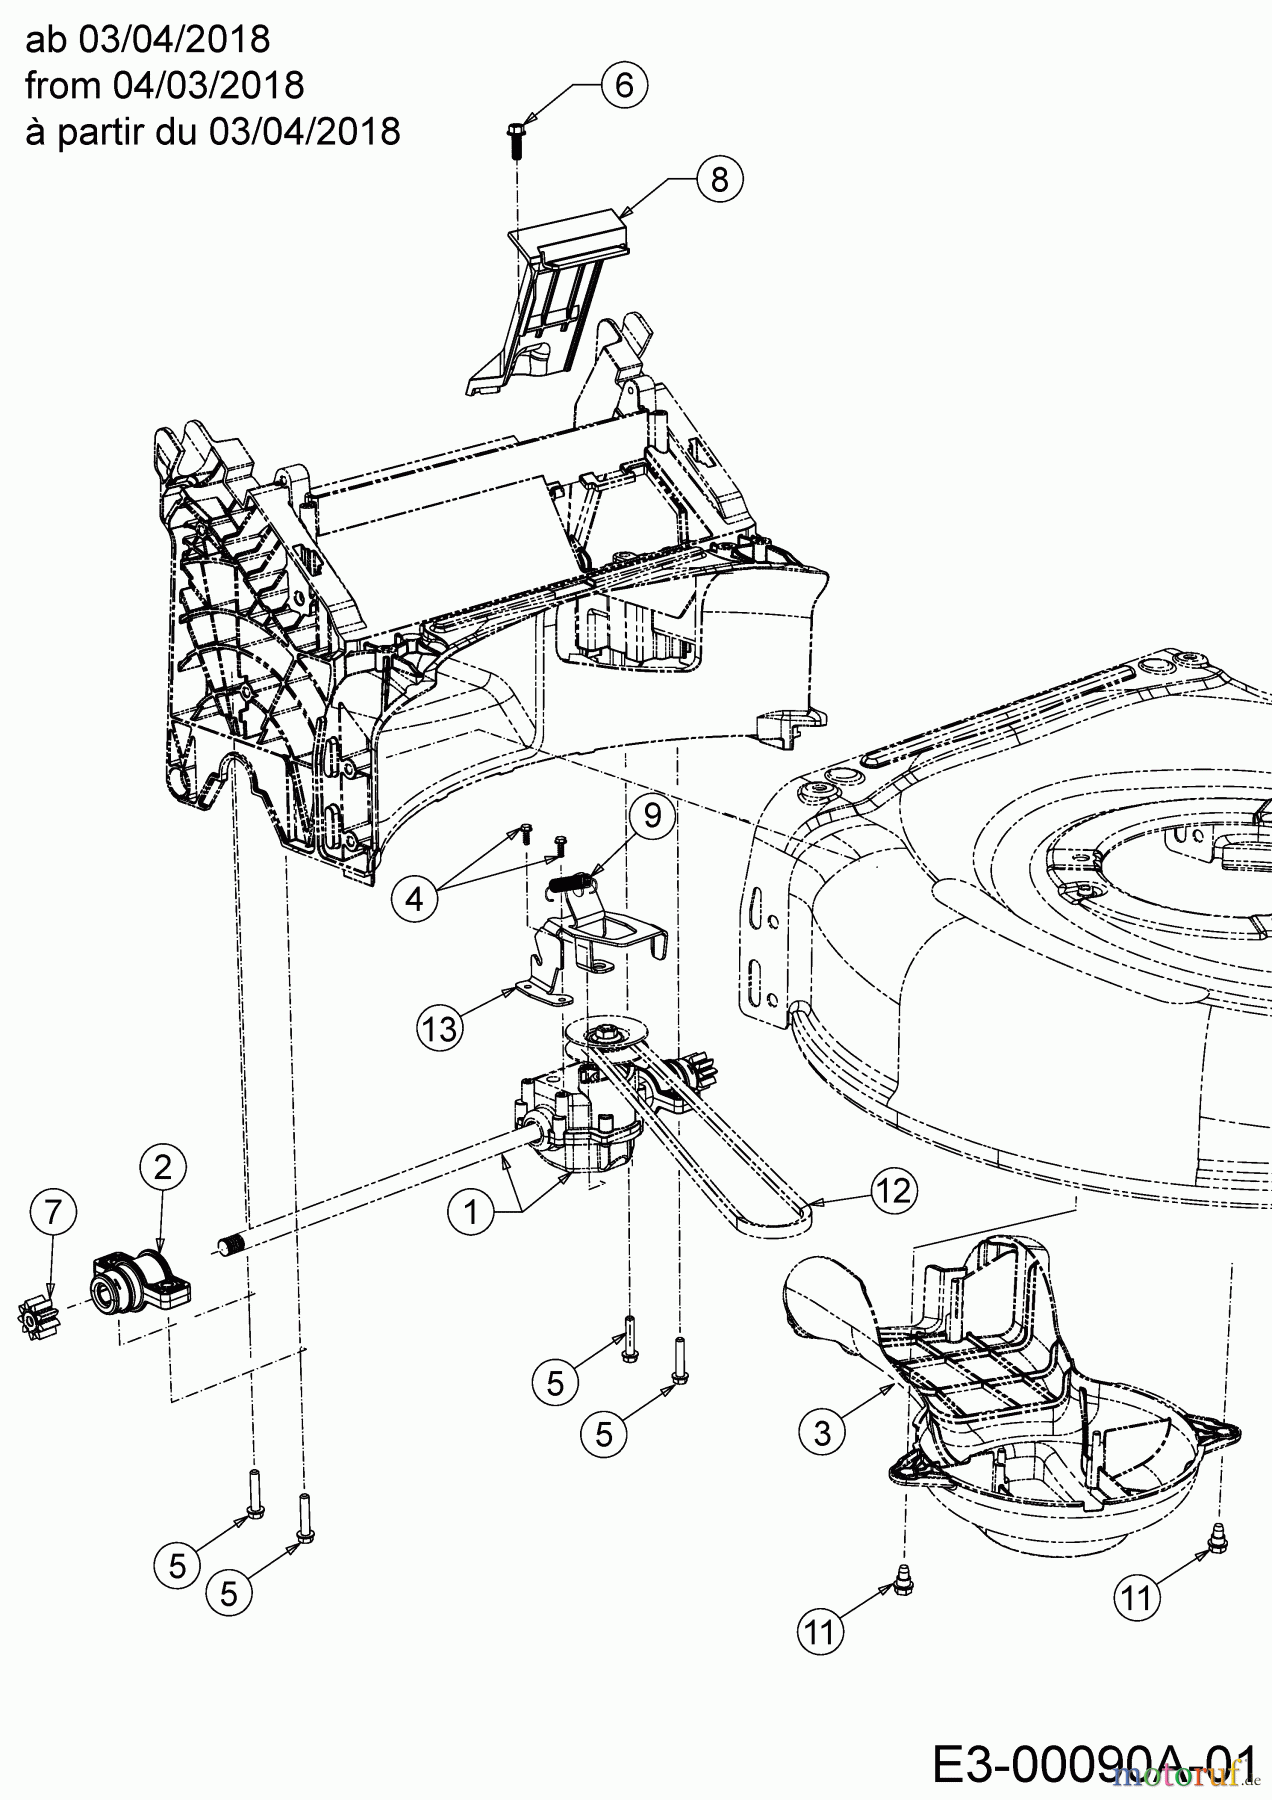  MTD Petrol mower self propelled LMEX 53 K 12B-PH7D682  (2019) Gearbox, Belt from 04/03/2018